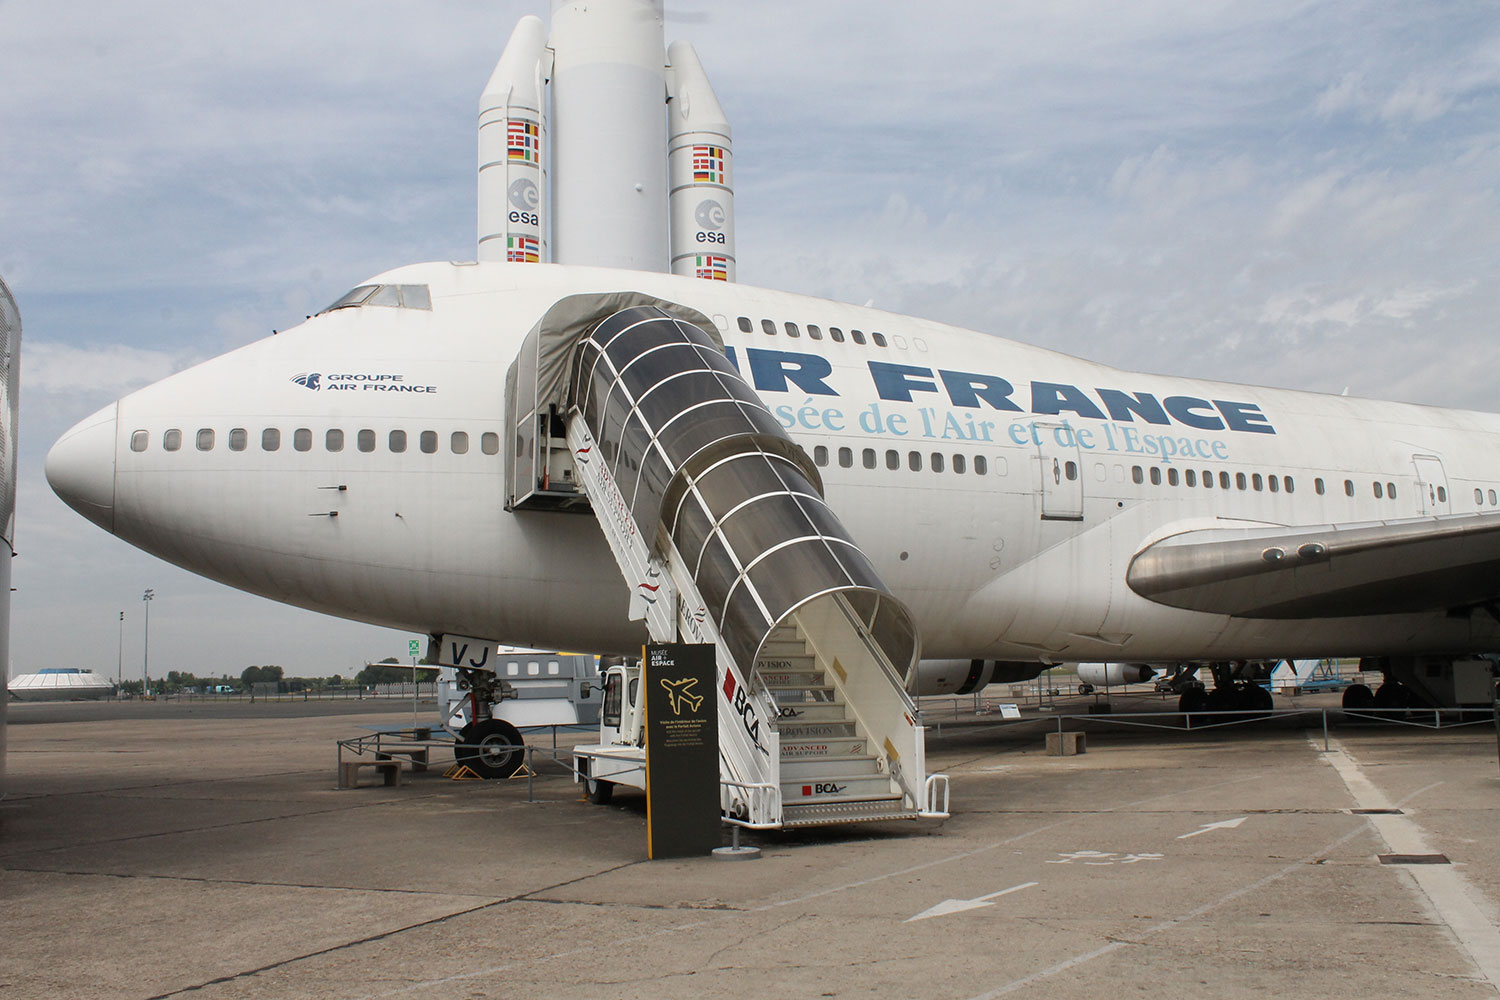 Paris Le Bourget Air France Boeing 747-100 F-BPVJ